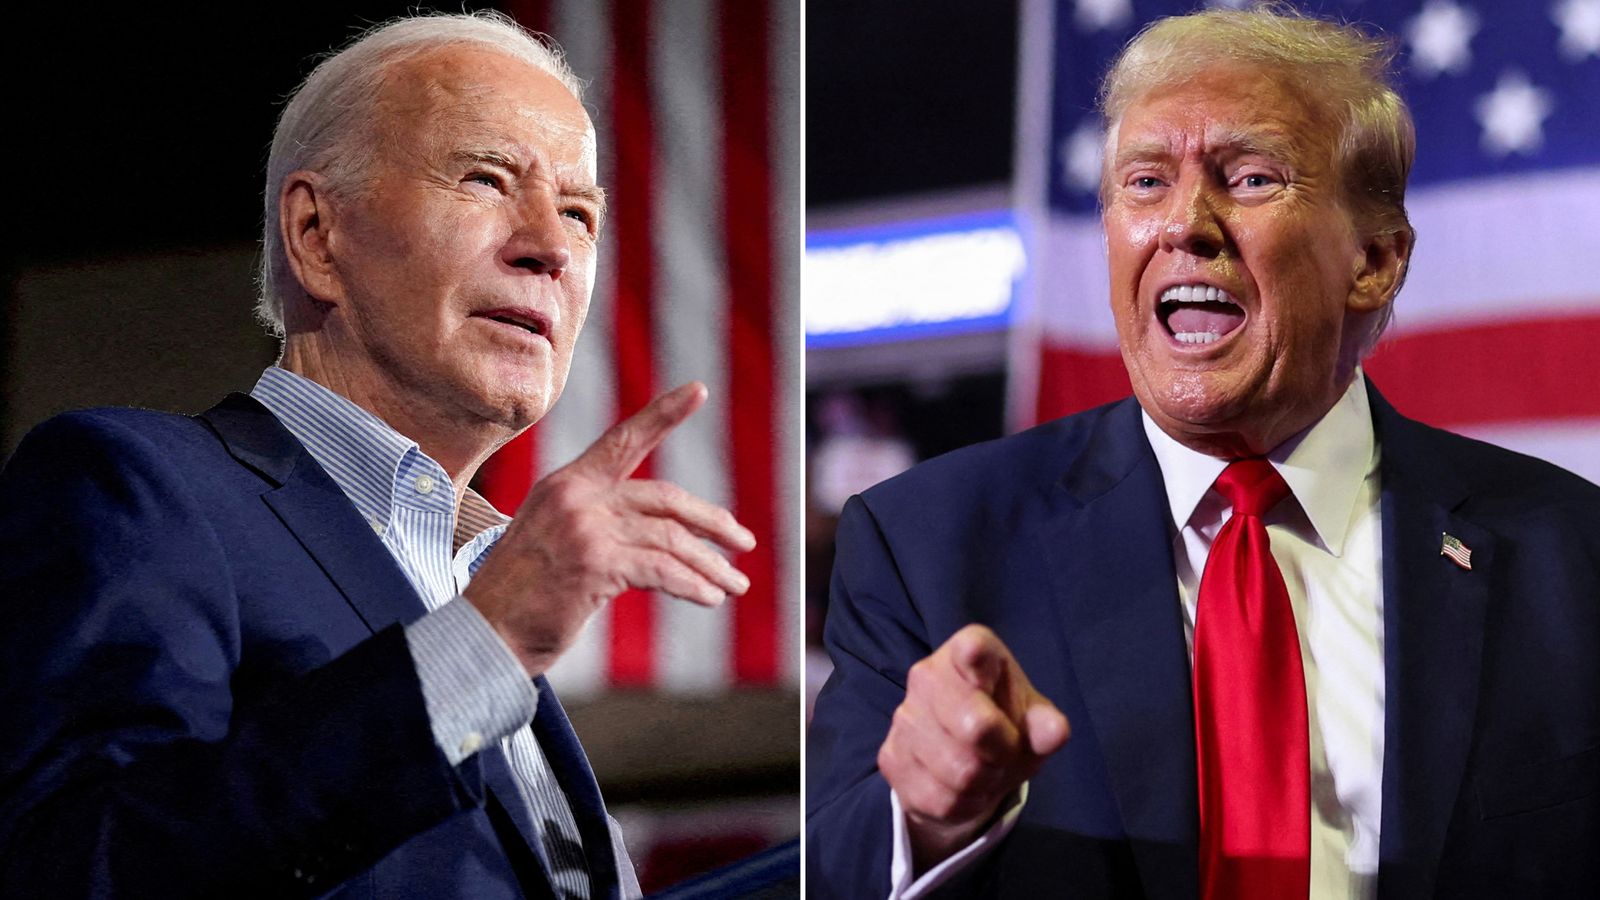 Trump vs. Biden-Debatte: Eine Konfrontation zwischen Republikanern und Demokraten in der ersten im Fernsehen übertragenen Konfrontation im Präsidentschaftswahlkampf |  US-Nachrichten